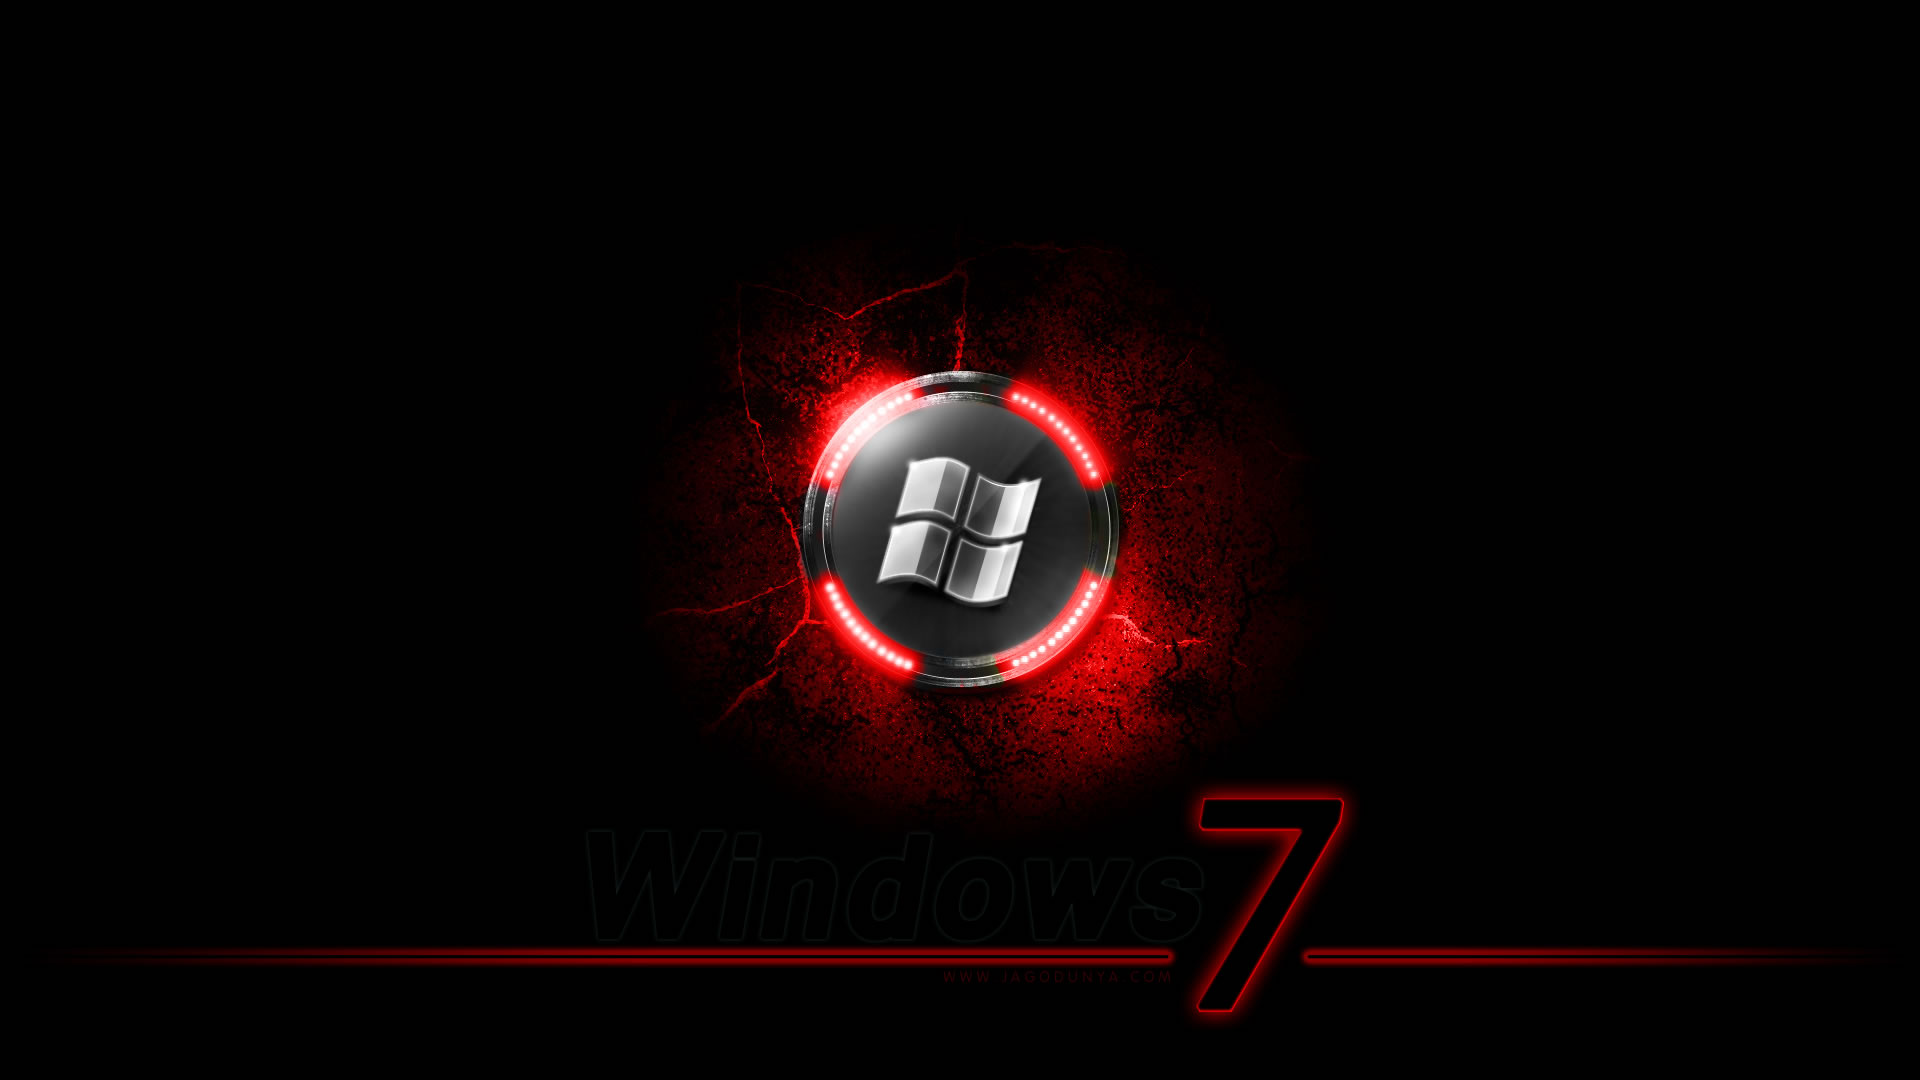 Black and Red Windows 7 Wallpaper: Các hình nền Windows 7 màu đen và đỏ cực kỳ nổi bật và độc đáo. Cho phép bạn thể hiện cá tính của mình trên màn hình máy tính với những hình nền màu sắc điệu đà và cá tính.